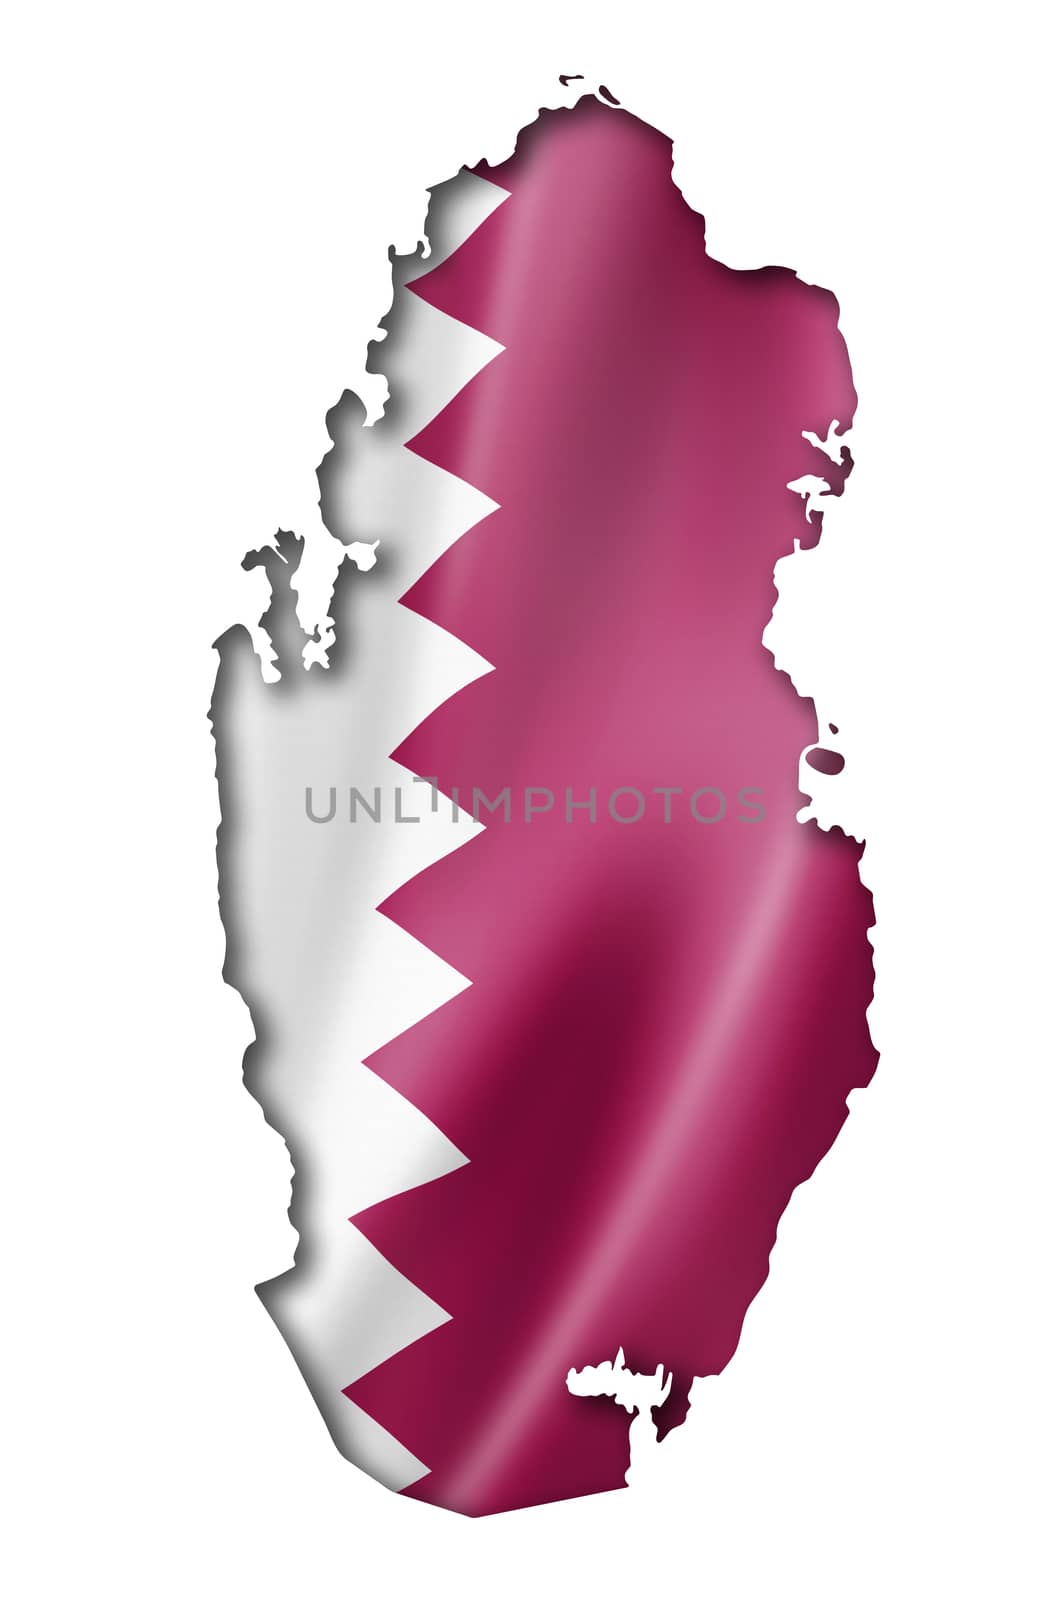 Qatar flag map by daboost